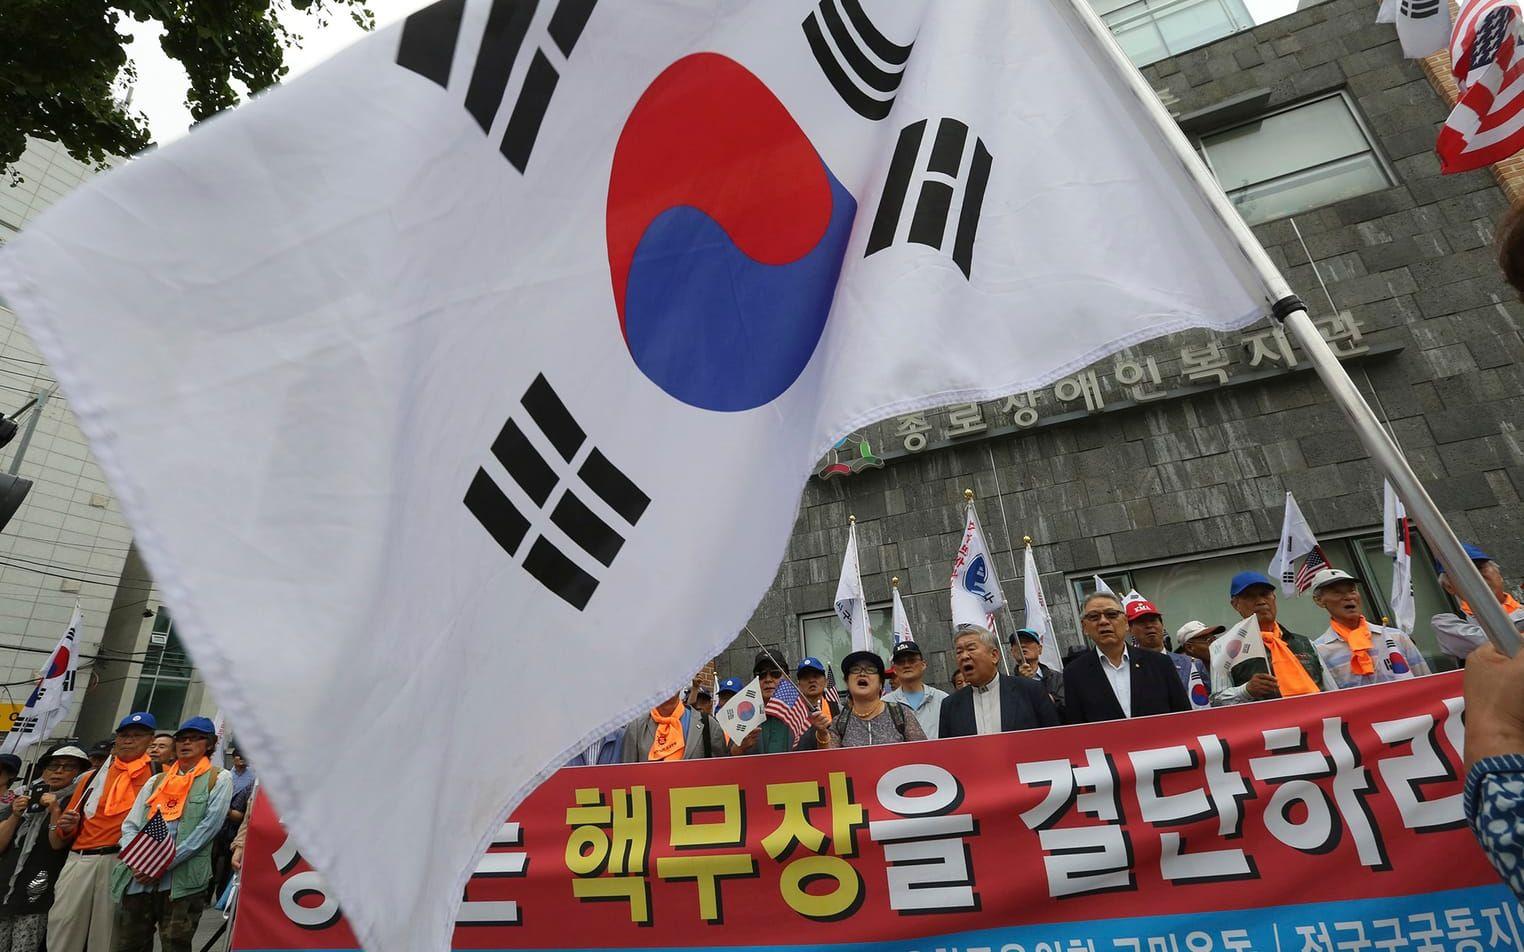 Sydkoreanska demonstranter kräver utplacering av kärnvapenmissiler i landet, som ett svar på Nordkoreas provsprängningar. FOTO: Ahn Young-joon/AP
